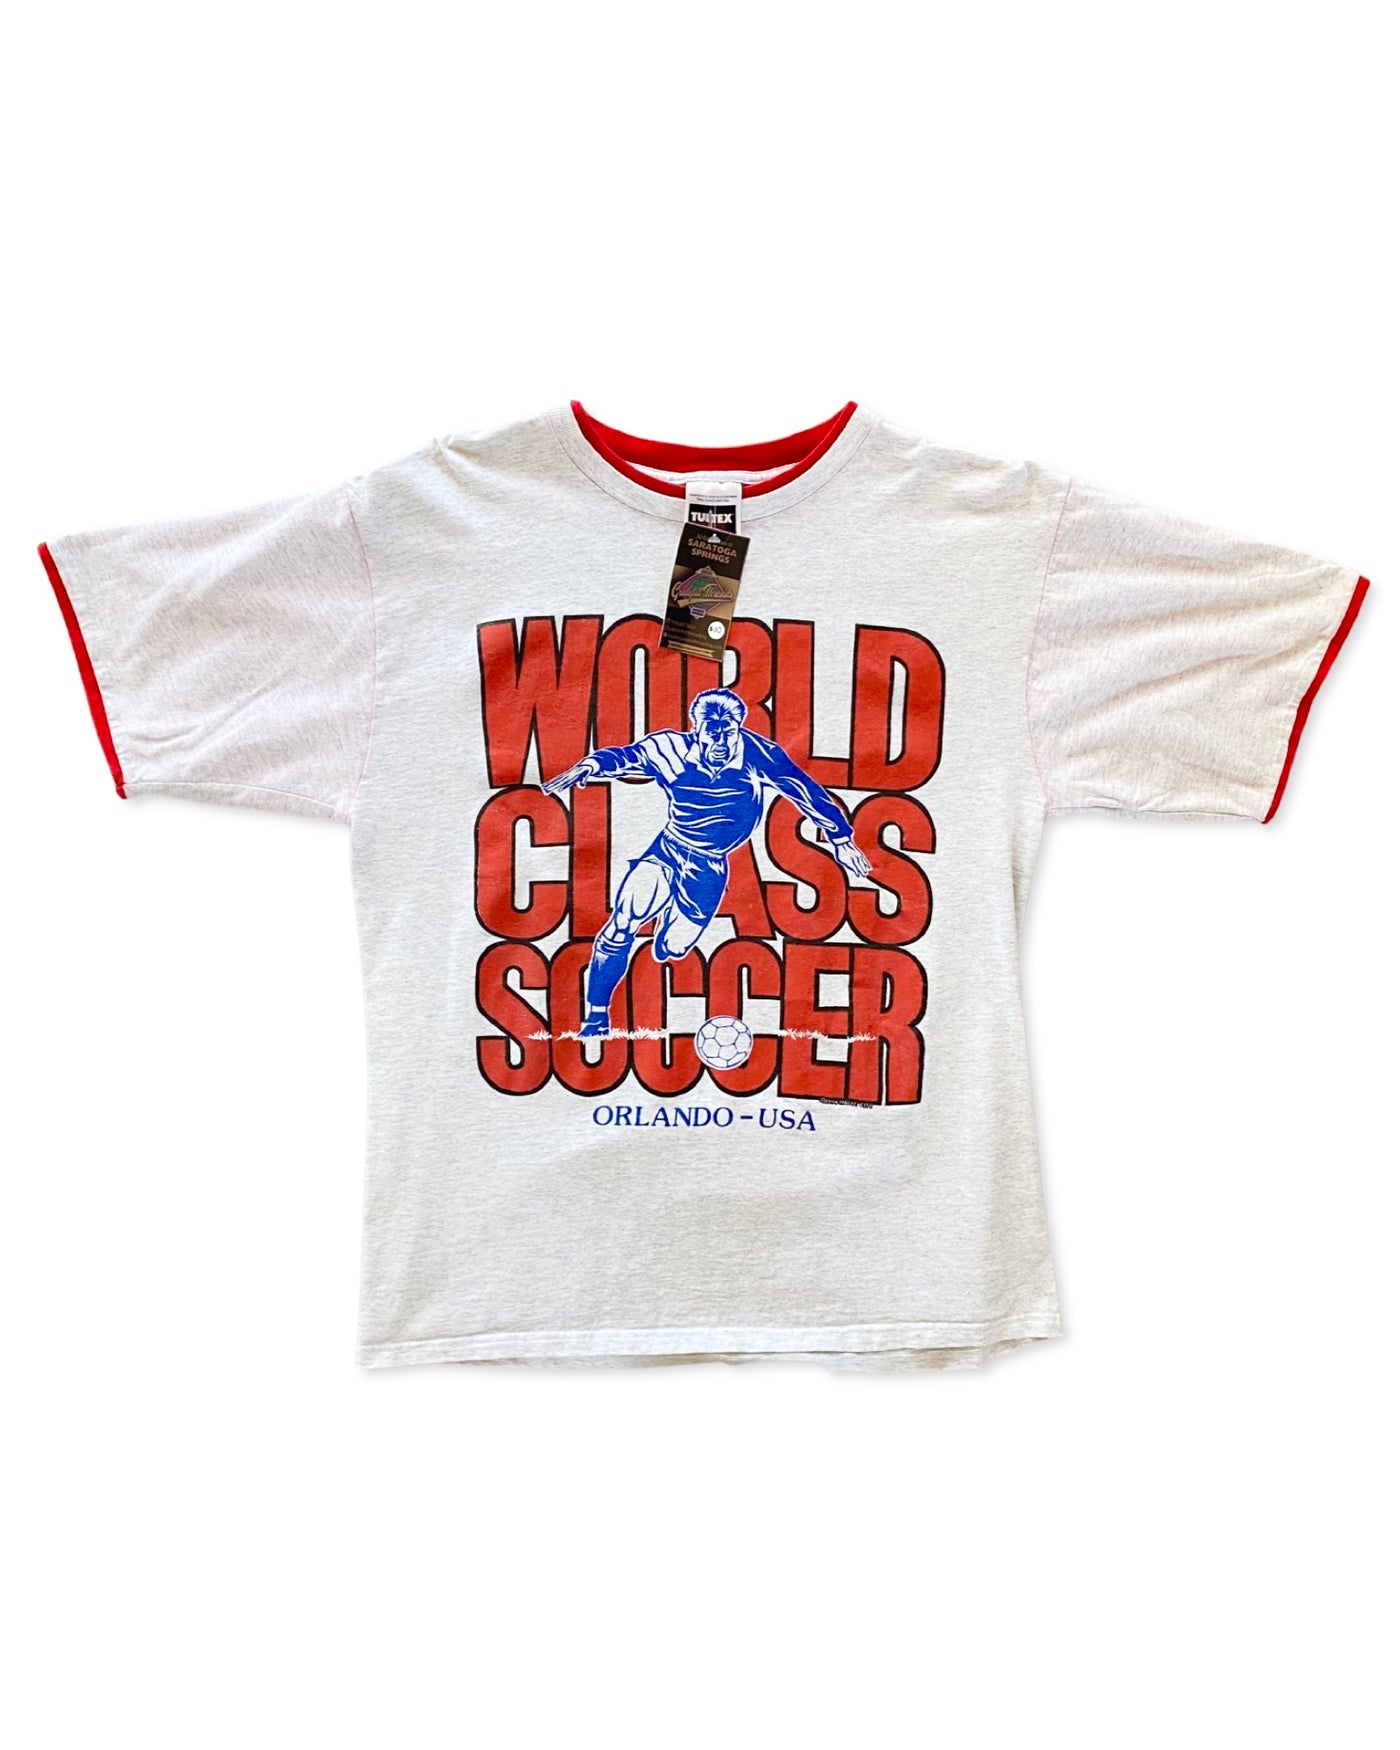 Vintage 1993 World Class Soccer T-Shirt